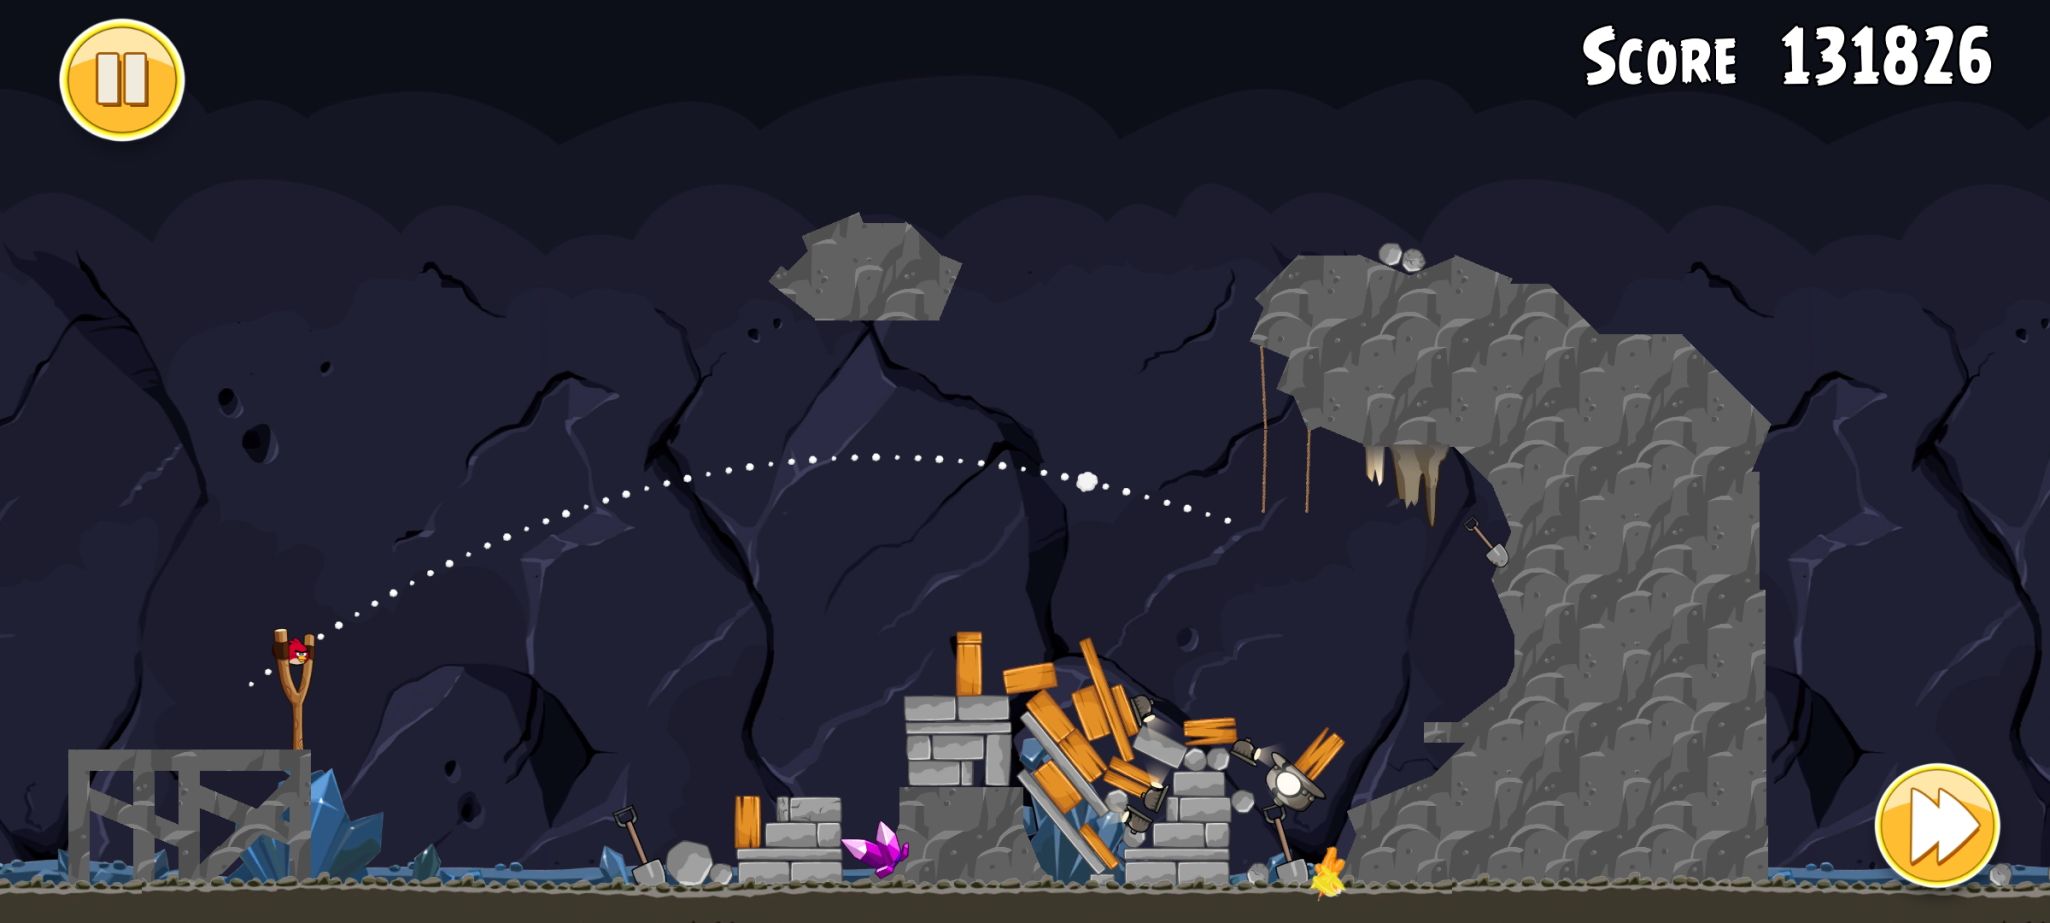 Caminho anterior do estilingue apresentado na captura de tela clássica do Angry Birds